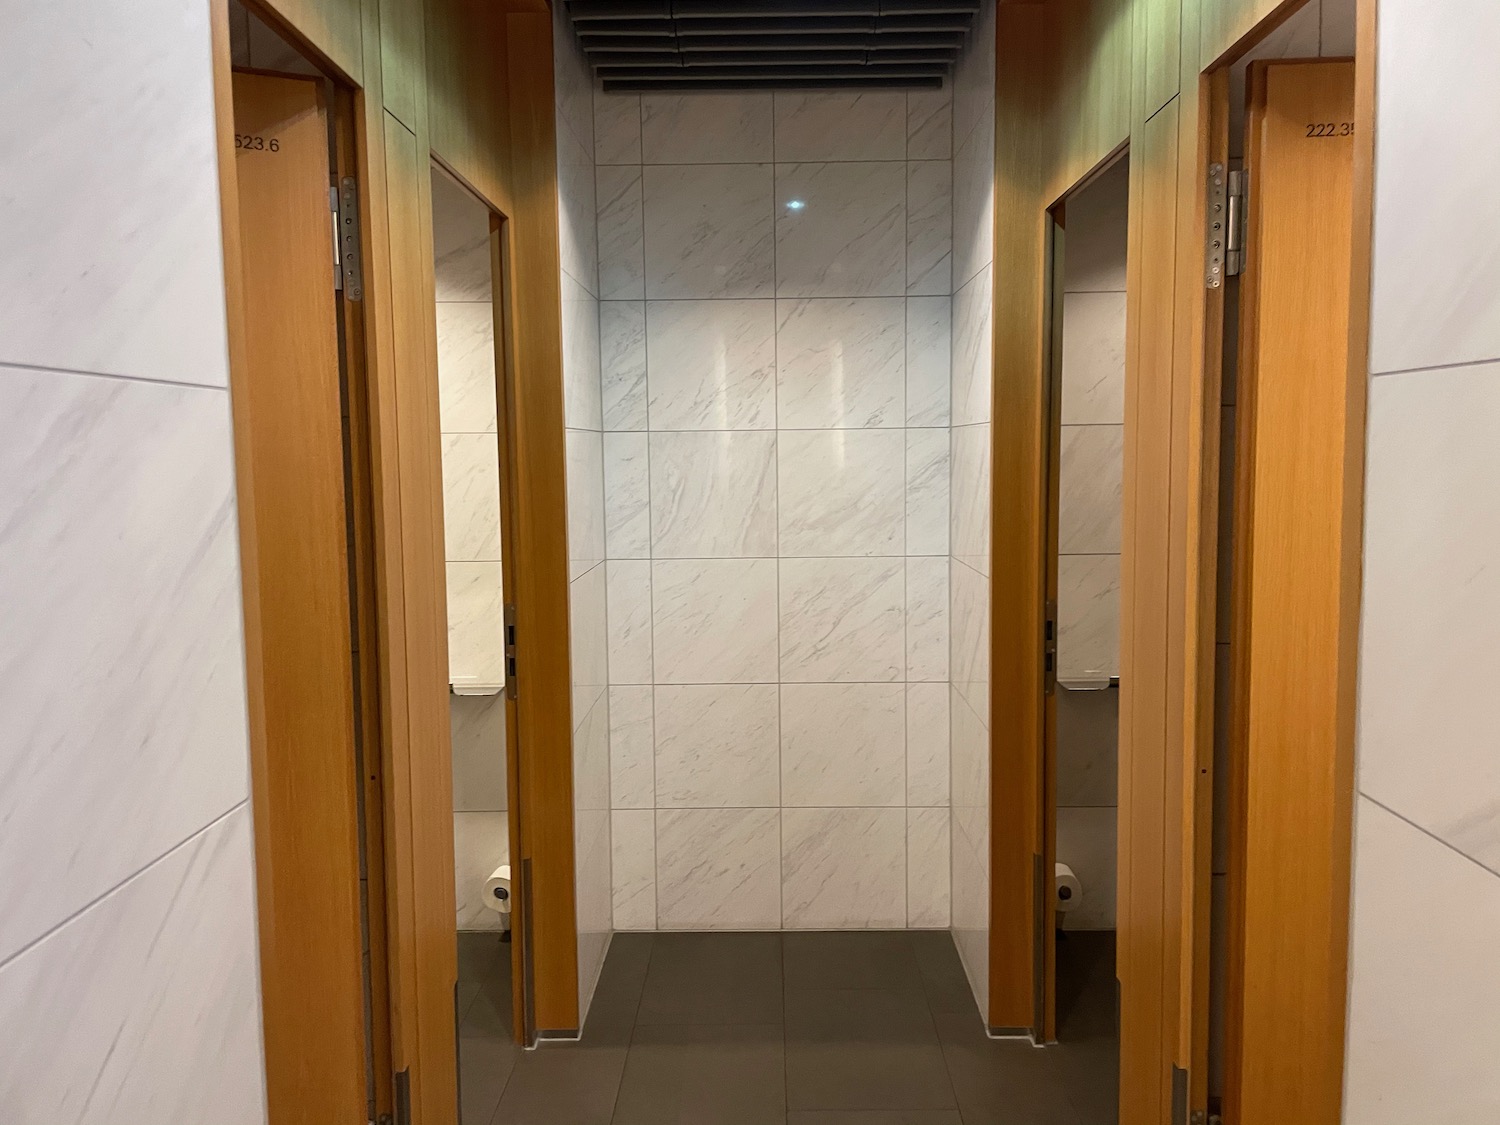 a bathroom with doors open